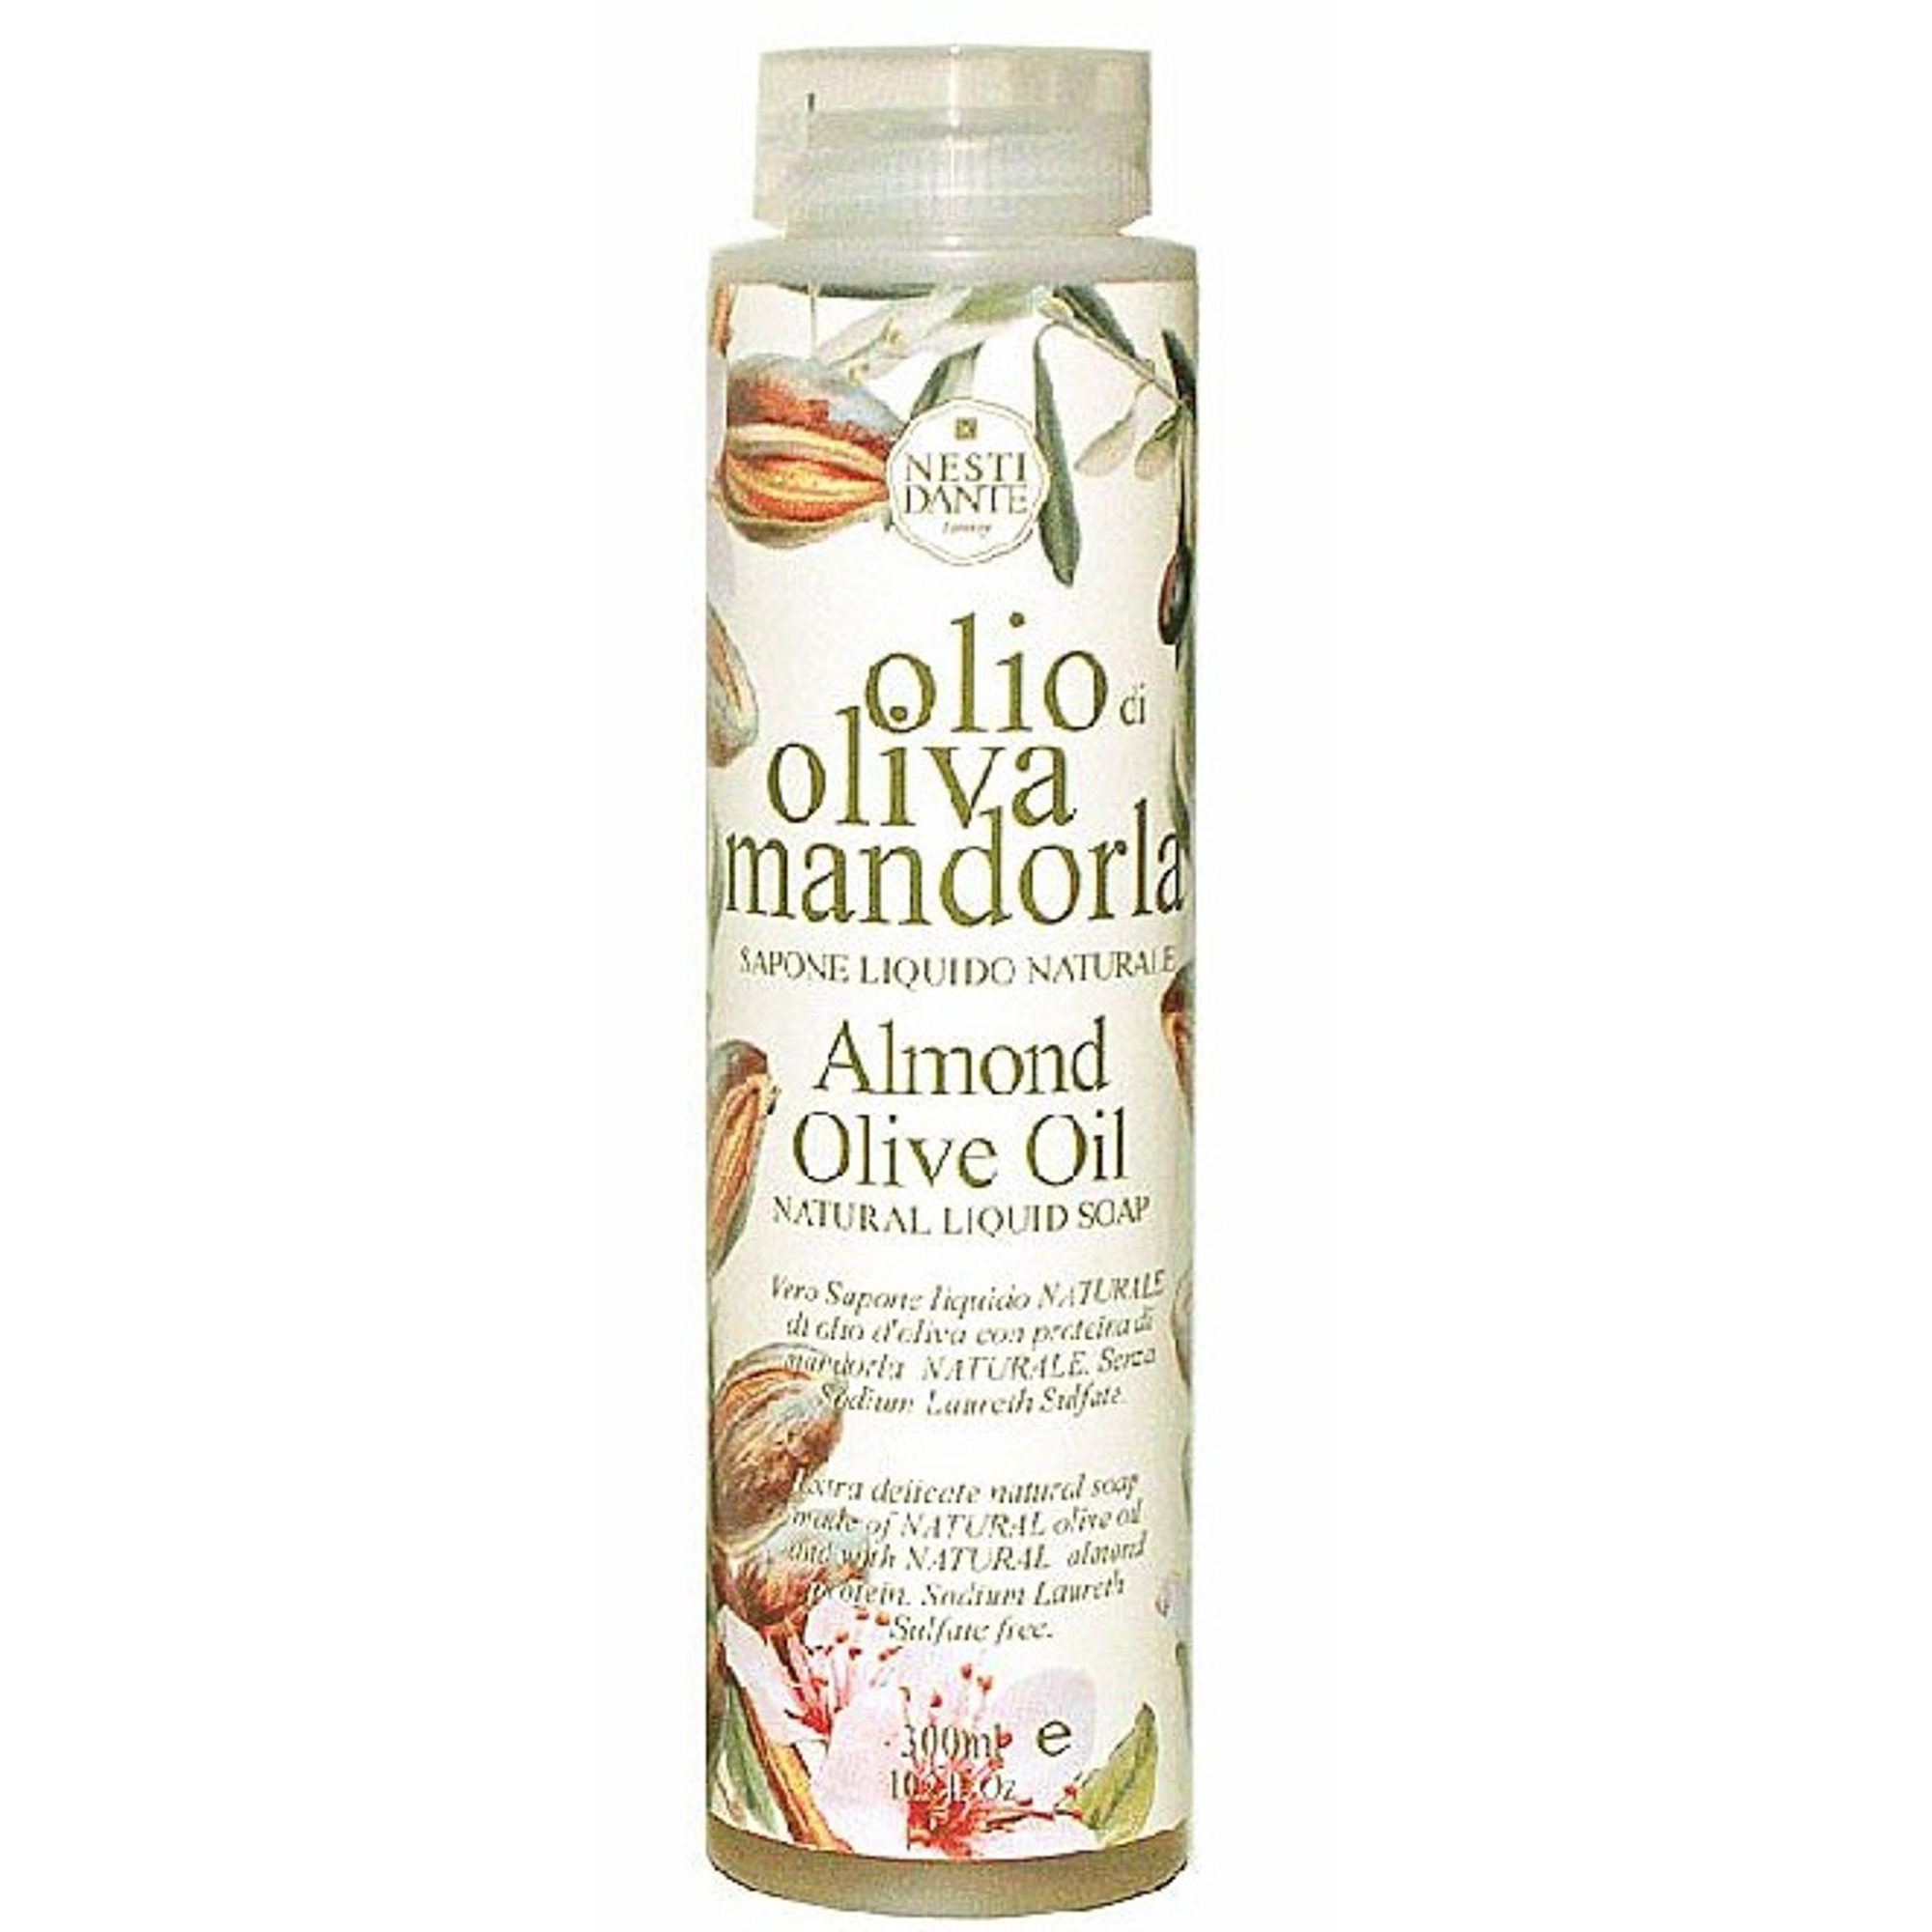 Гель для душа оливковое масло/мандарин 300мл Nesti dante crazy cactus гель пенный 2 в 1 для душа и ванны алое и лайм 400мл